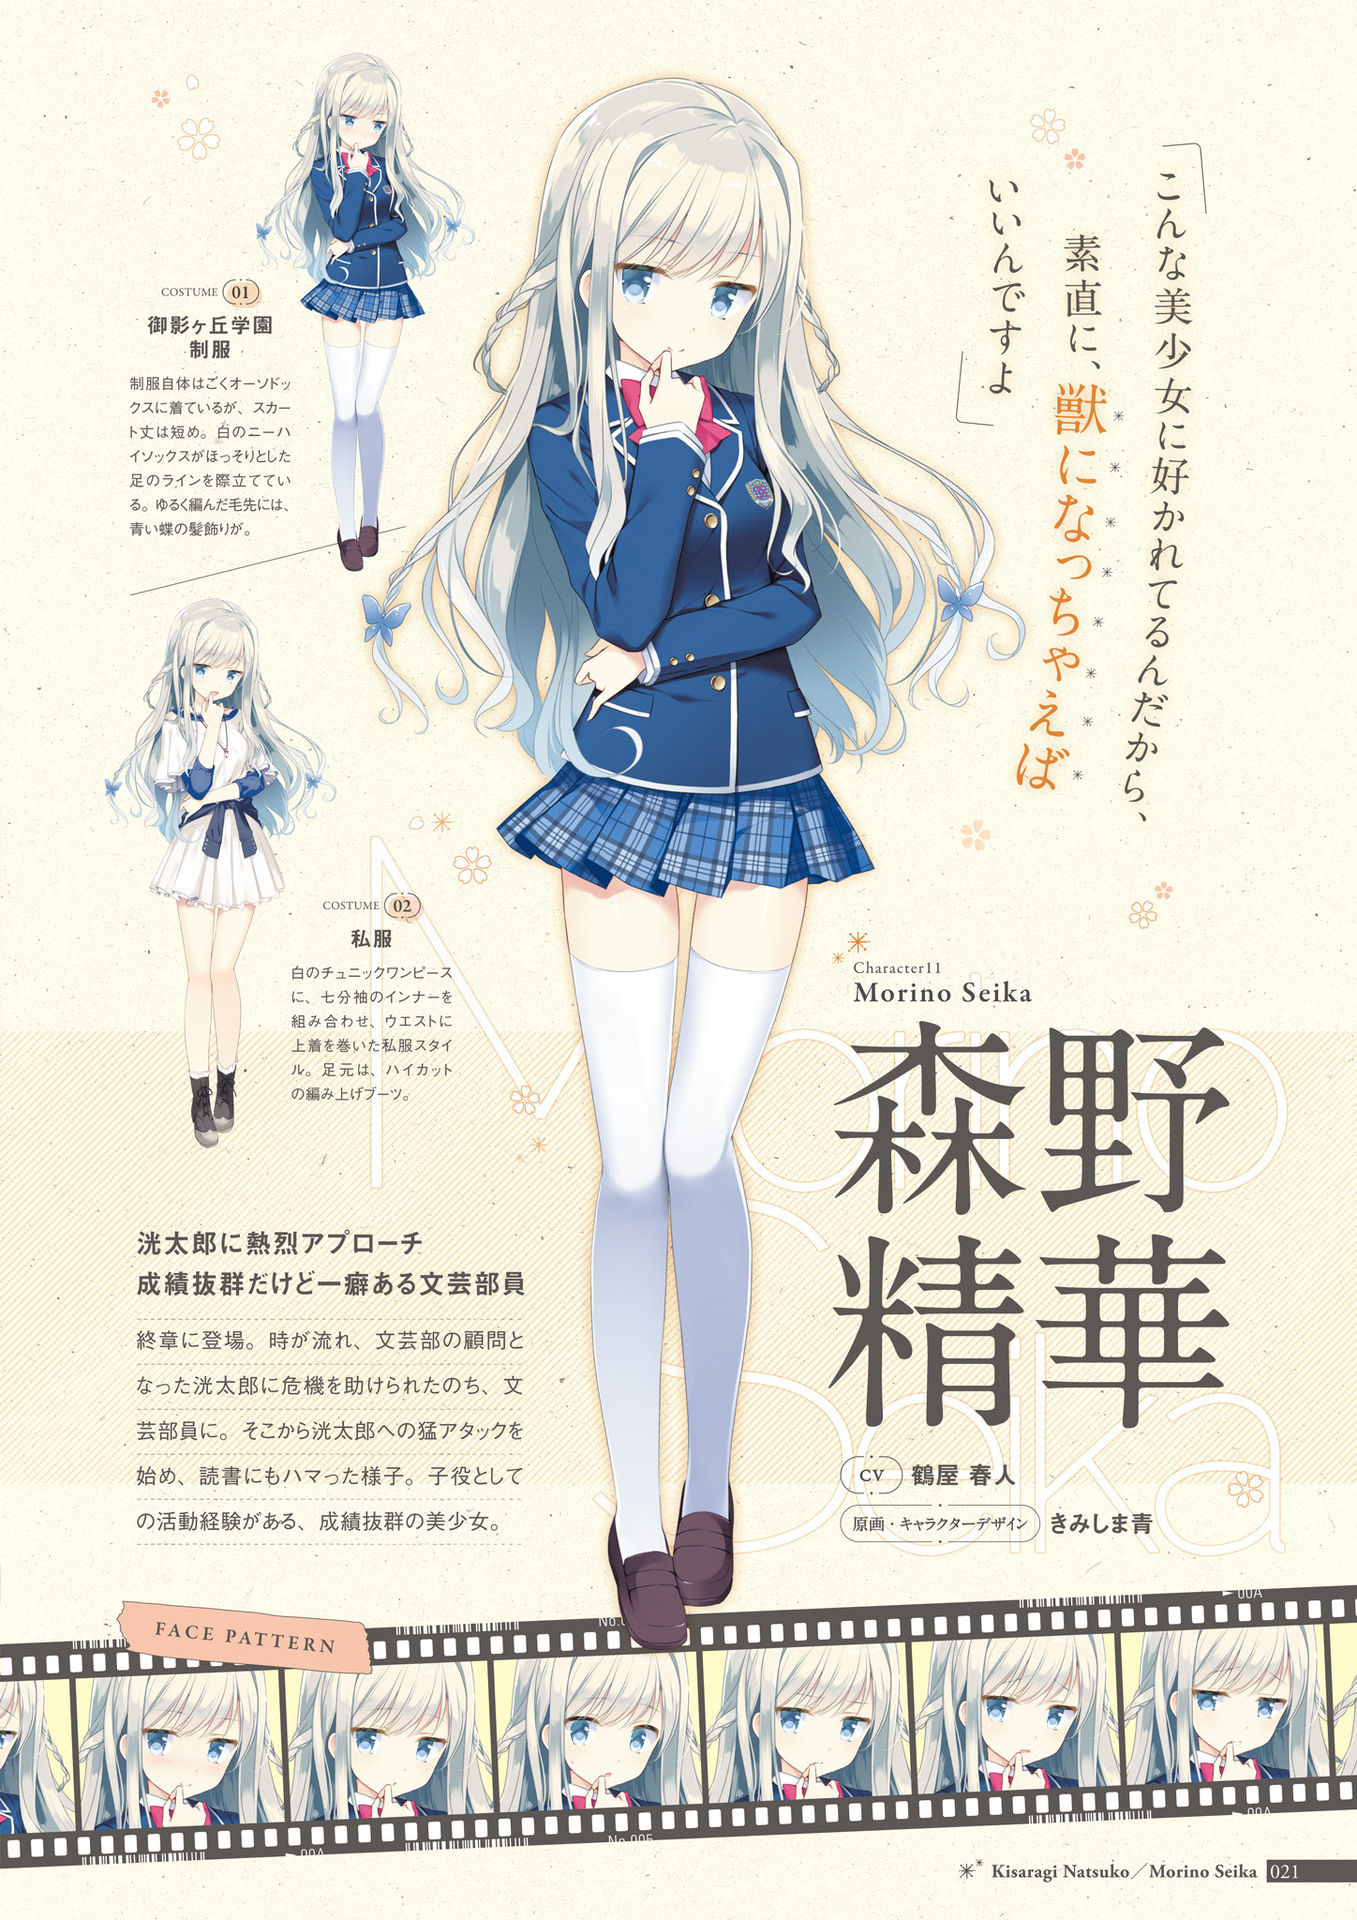 Us Track Kimishima Ao Koi Kakeru Shin Ai Kanojo Morino Seika Character Design Digital Version Dress Expression Profile Page Seifuku Thighhighs Yande Re